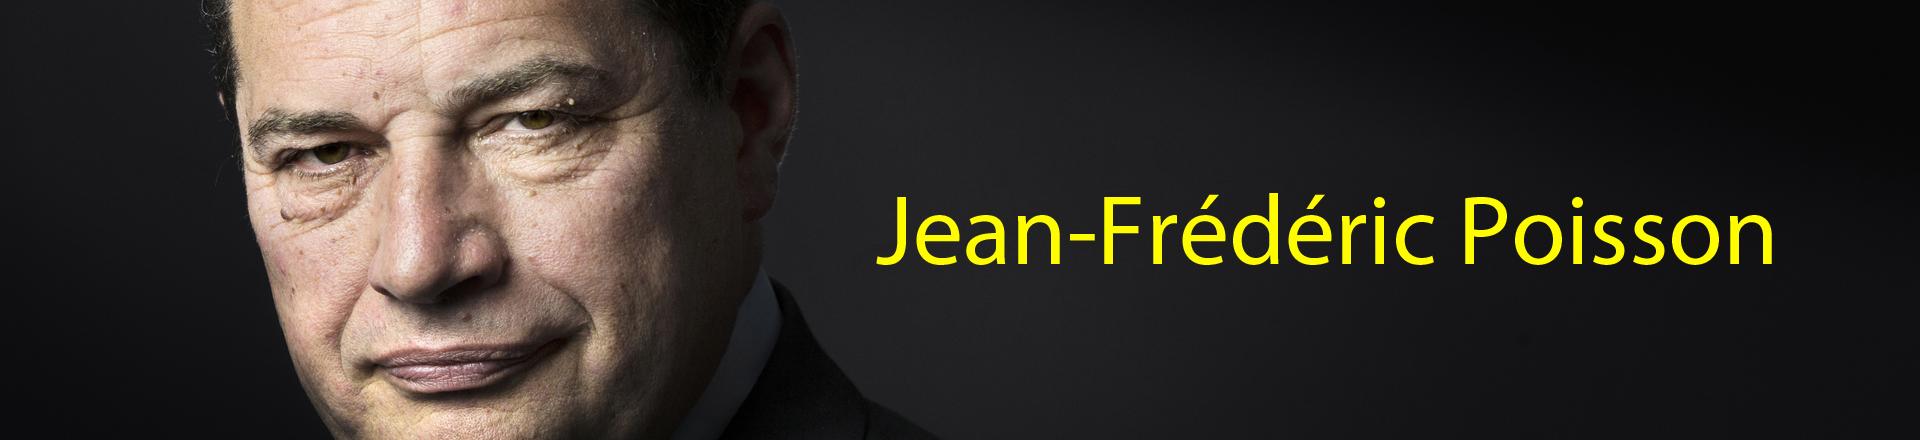 Jean-Frédéric Poisson. [Afp - JOEL SAGET]